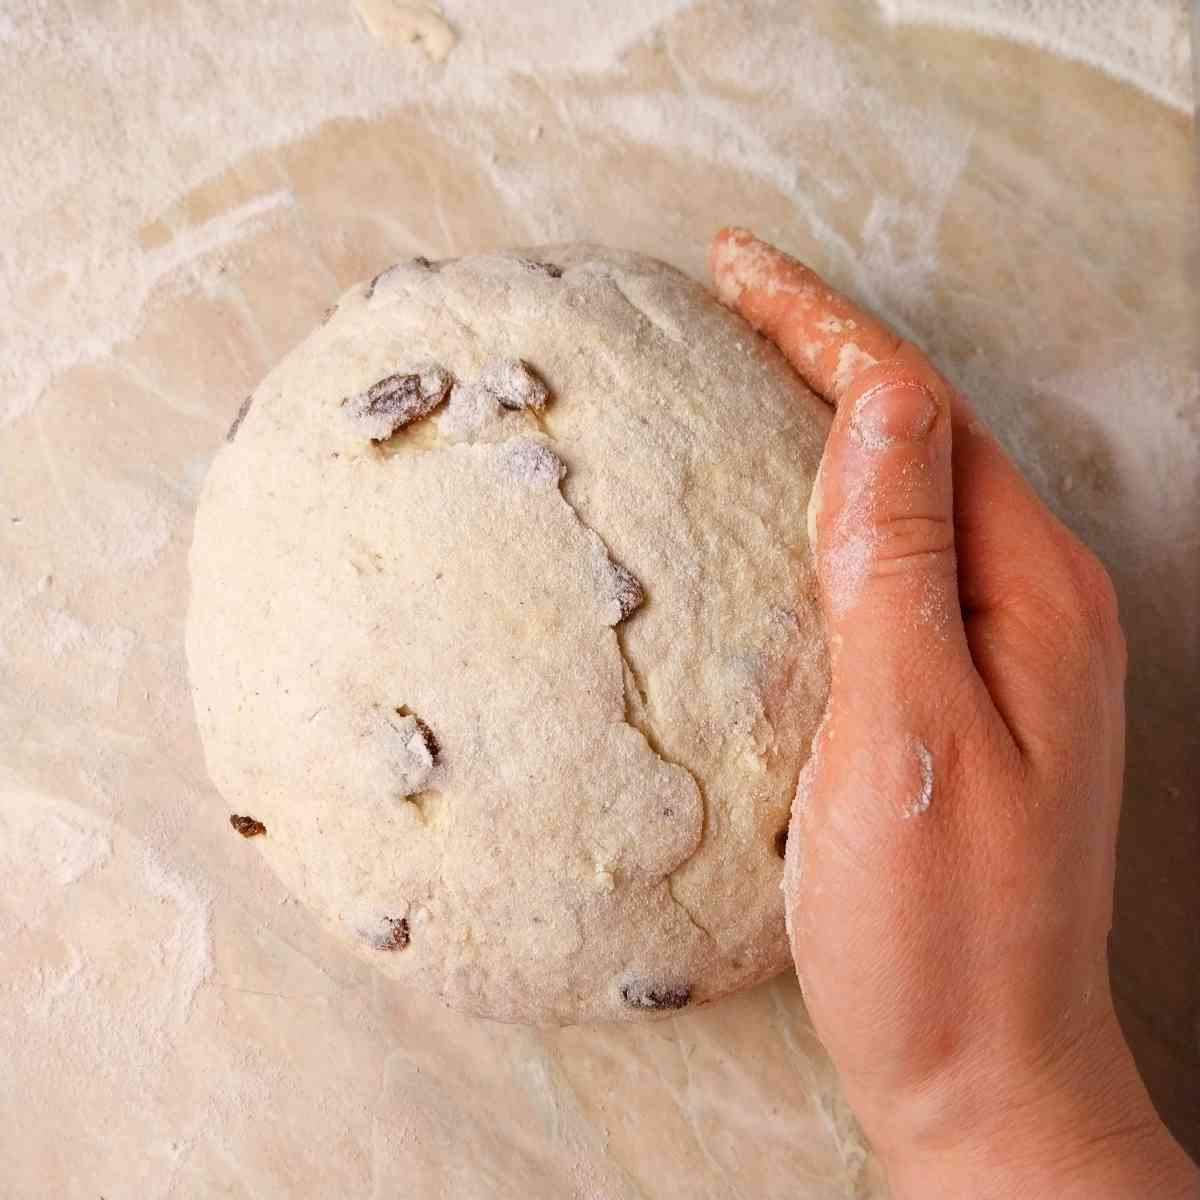 Dough shaped into a ball.